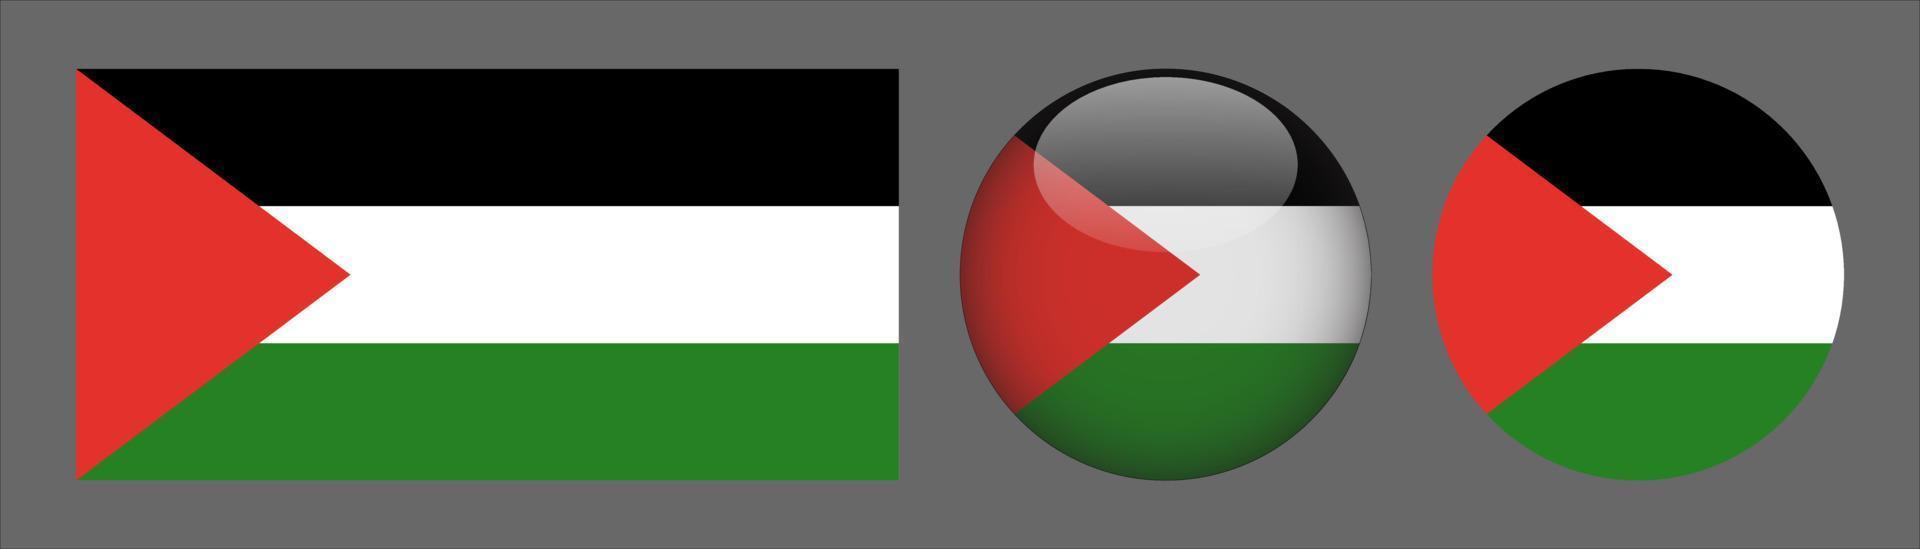 coleção do conjunto da bandeira da Palestina, proporção do tamanho original, 3d arredondado e plano arredondado. vetor